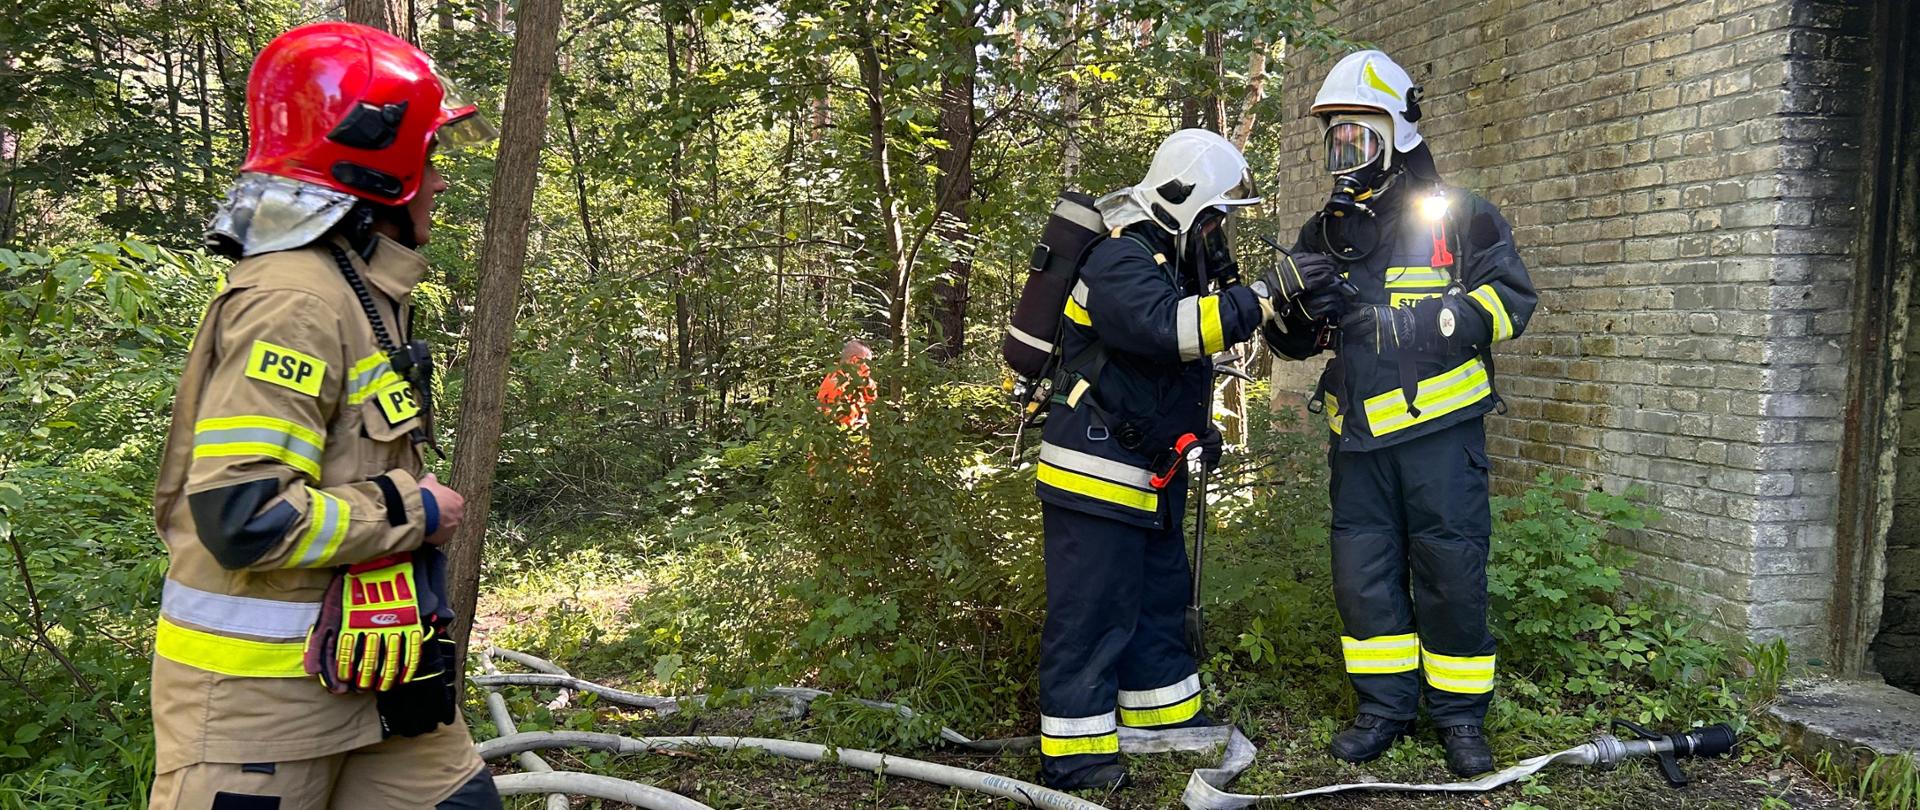 Strażacy prowadzą działania ratowniczo-gaśnicze podczas egzaminu